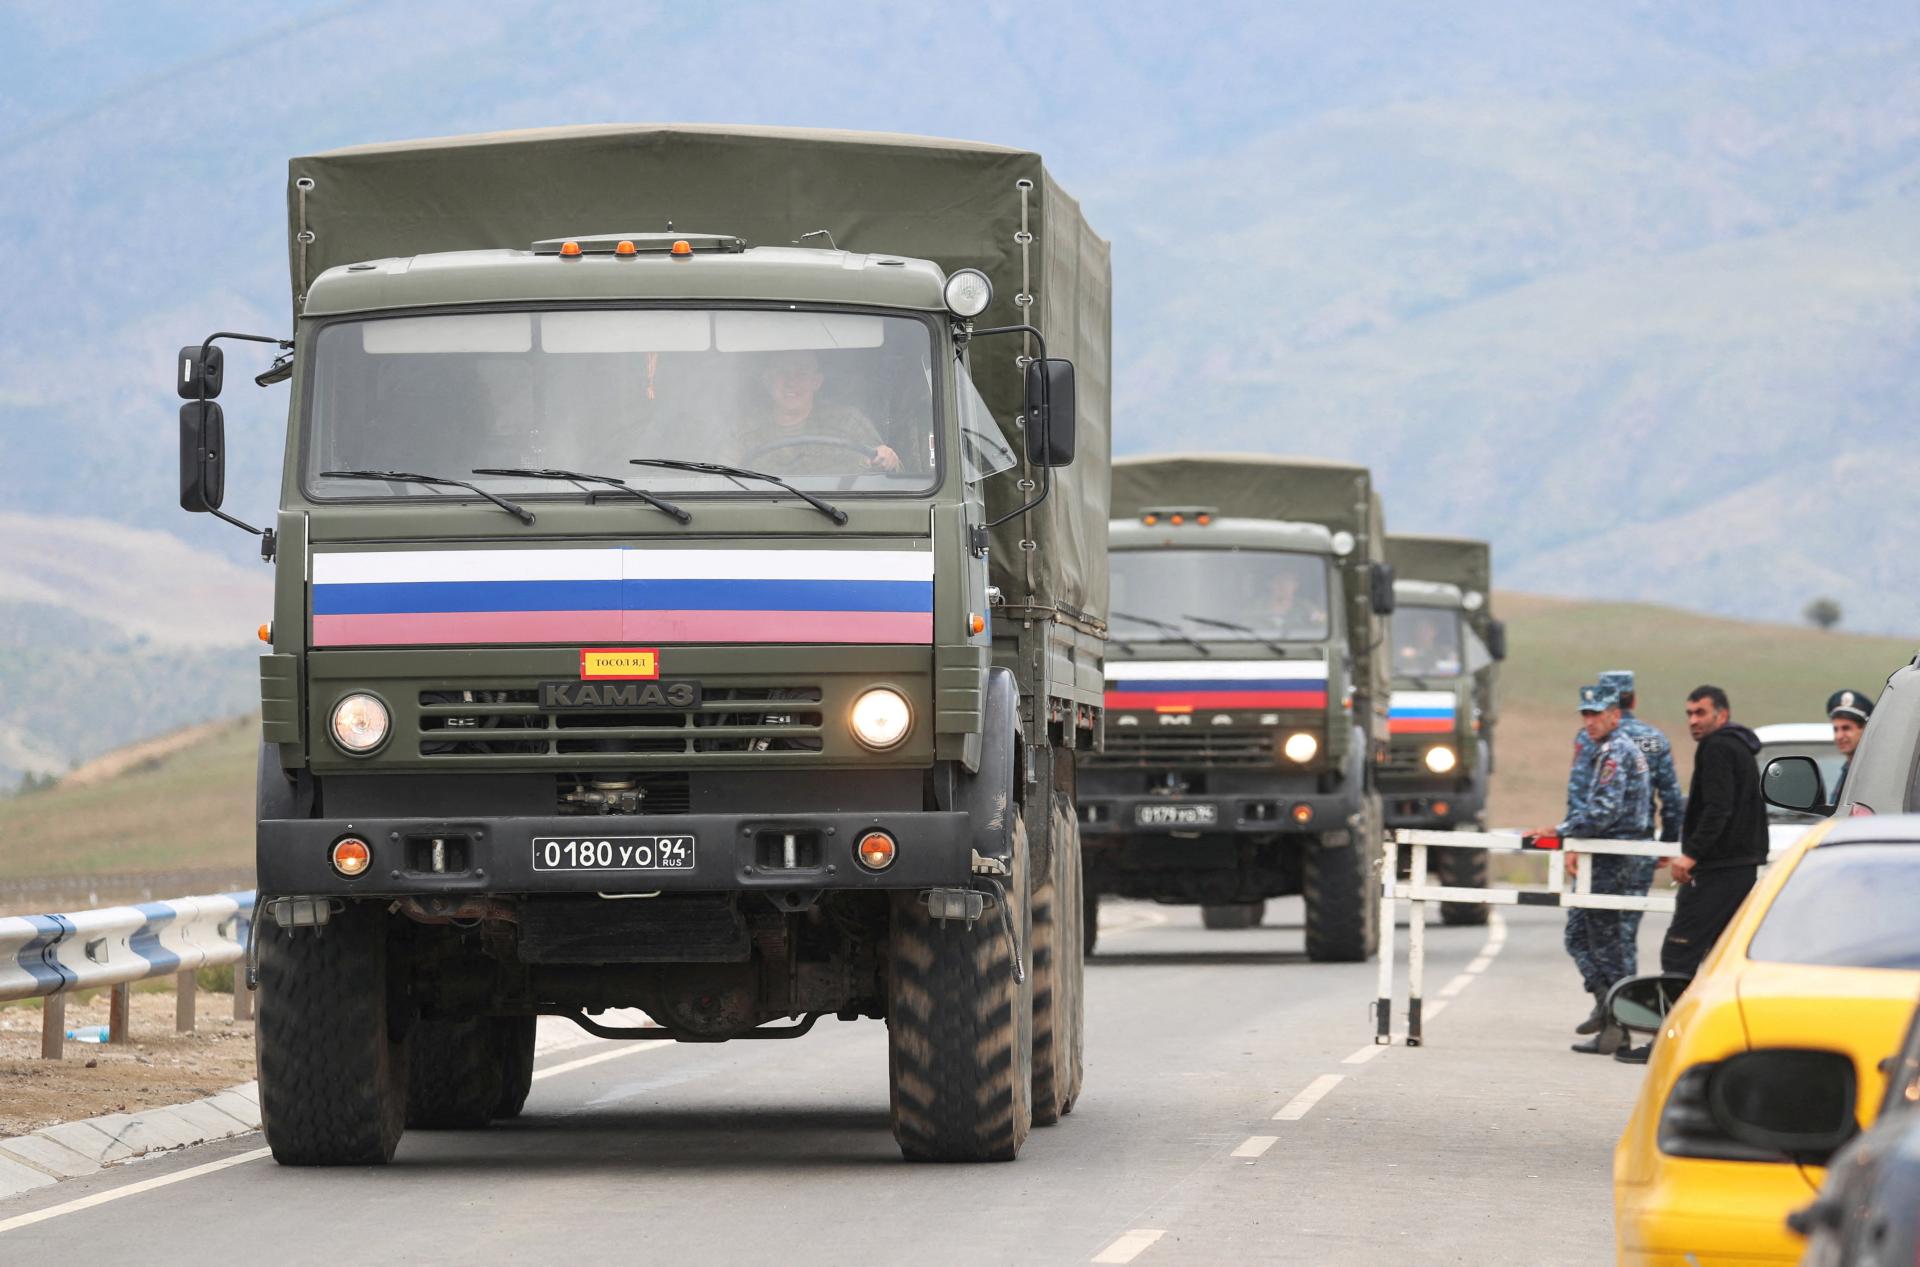 Arméni v Karabachu začali skladať zbrane, uviedlo ruské ministerstvo obrany